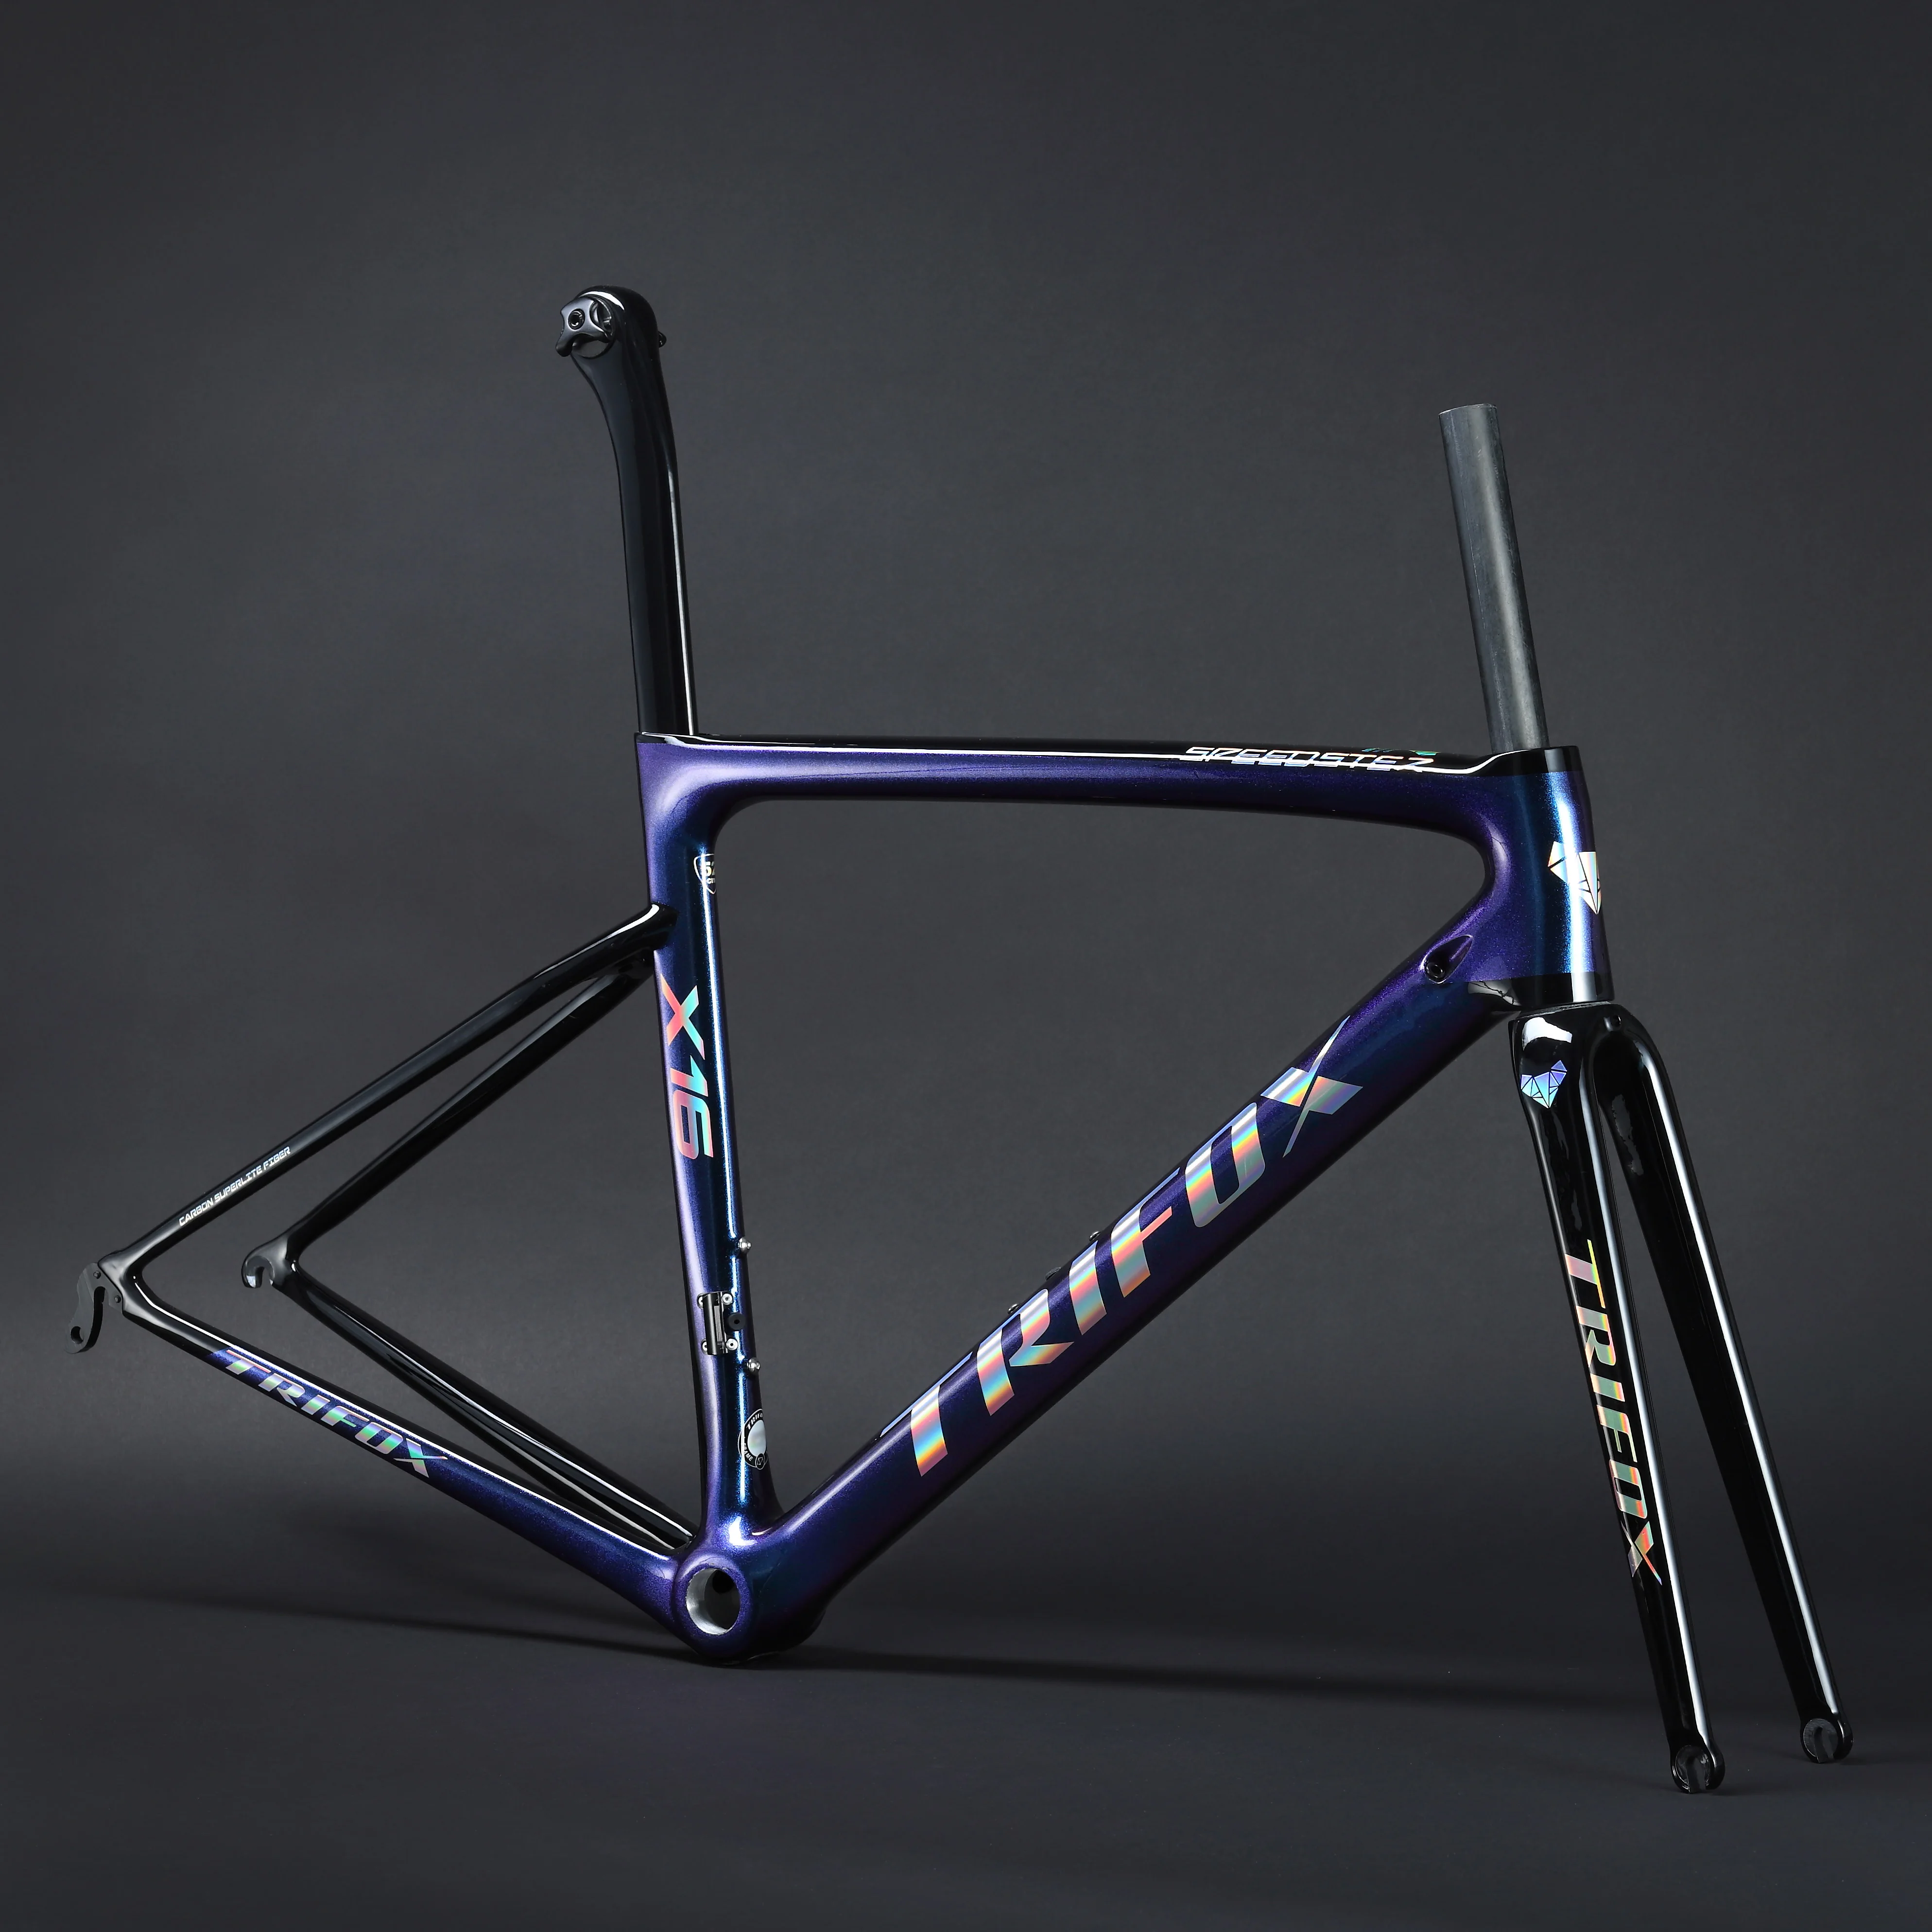 US $609.55 TRIFOX Carbon Frame Road V Carbon Road Bike Frame Di2 Mechanical Carbon Frame Size 440 490 520 540 560mm SL6 рама для велосипеда